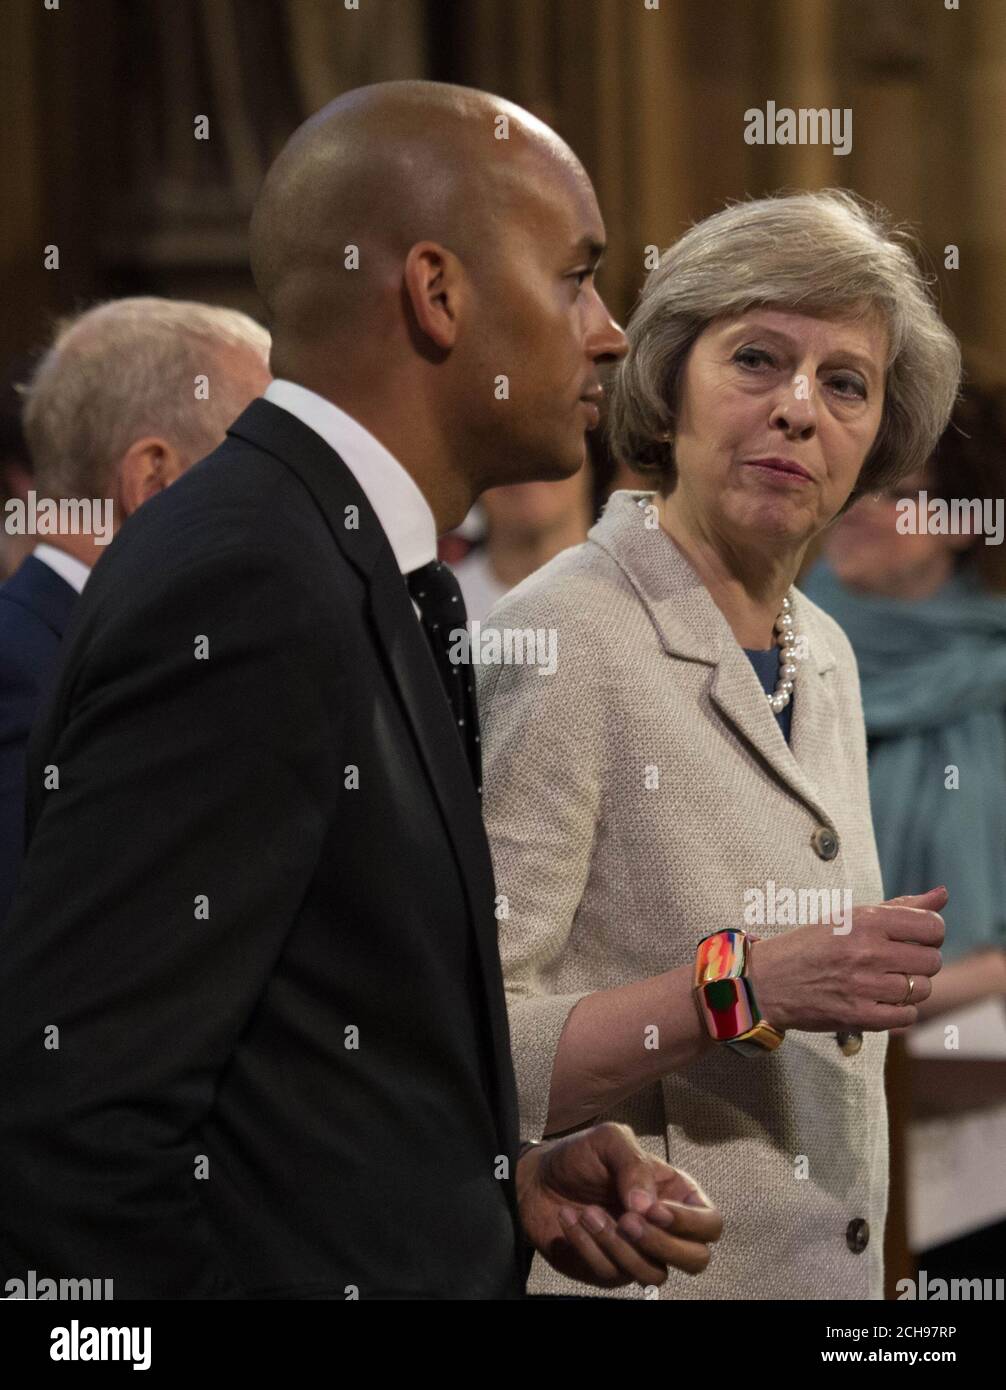 La secrétaire d'État Theresa May et la députée travailliste Chuka Umunna se joignent aux députés lorsqu'ils passent par le hall central lors de l'ouverture du Parlement au Palais de Westminster à Londres. Banque D'Images